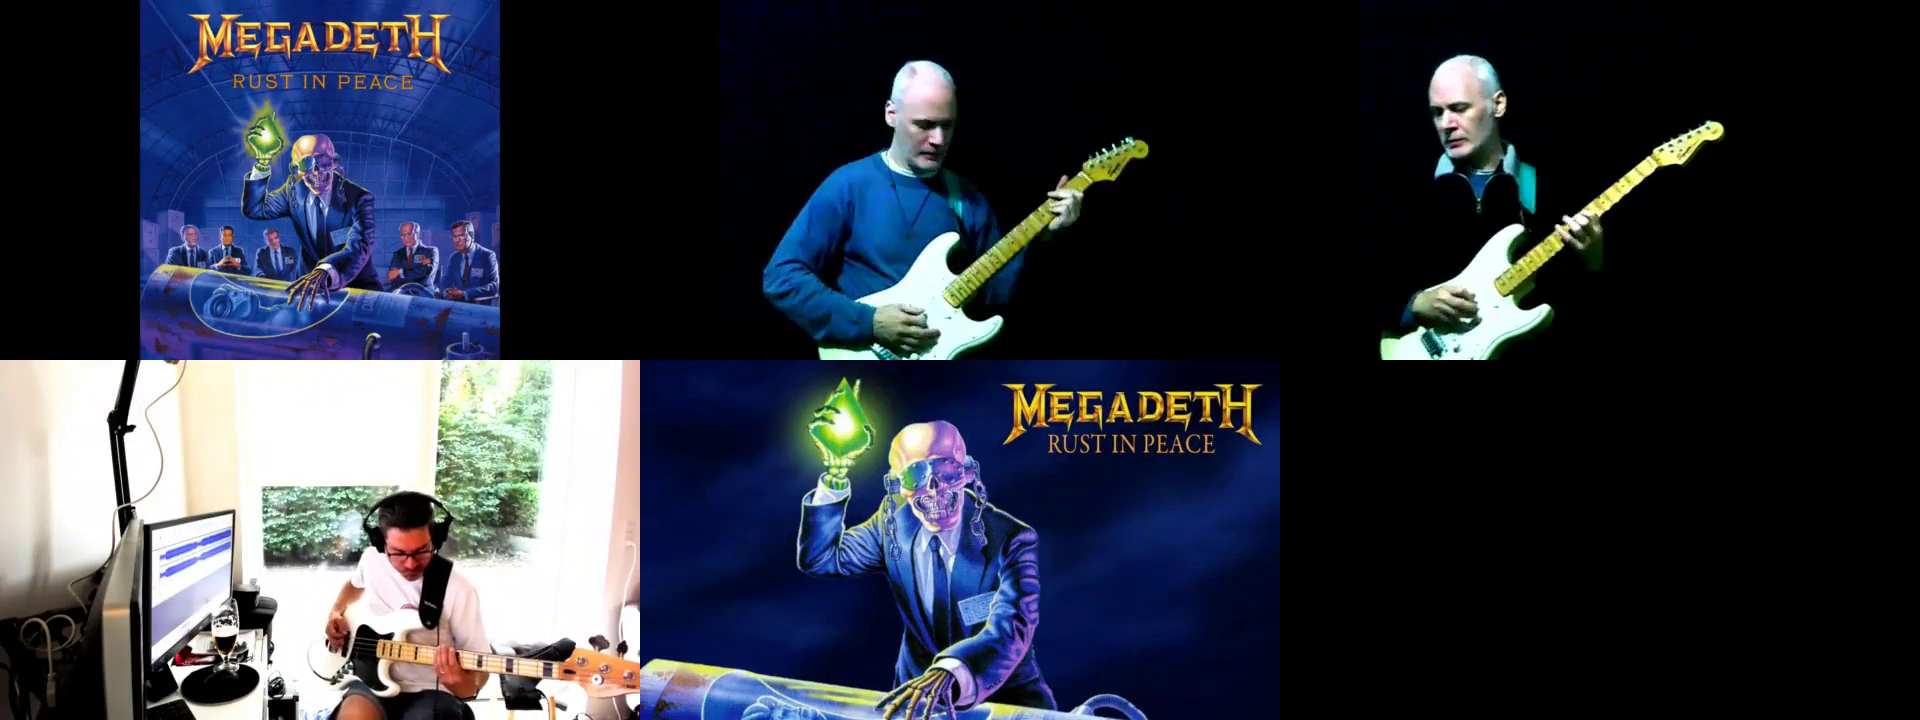 Megadeth - Tornado Of Souls